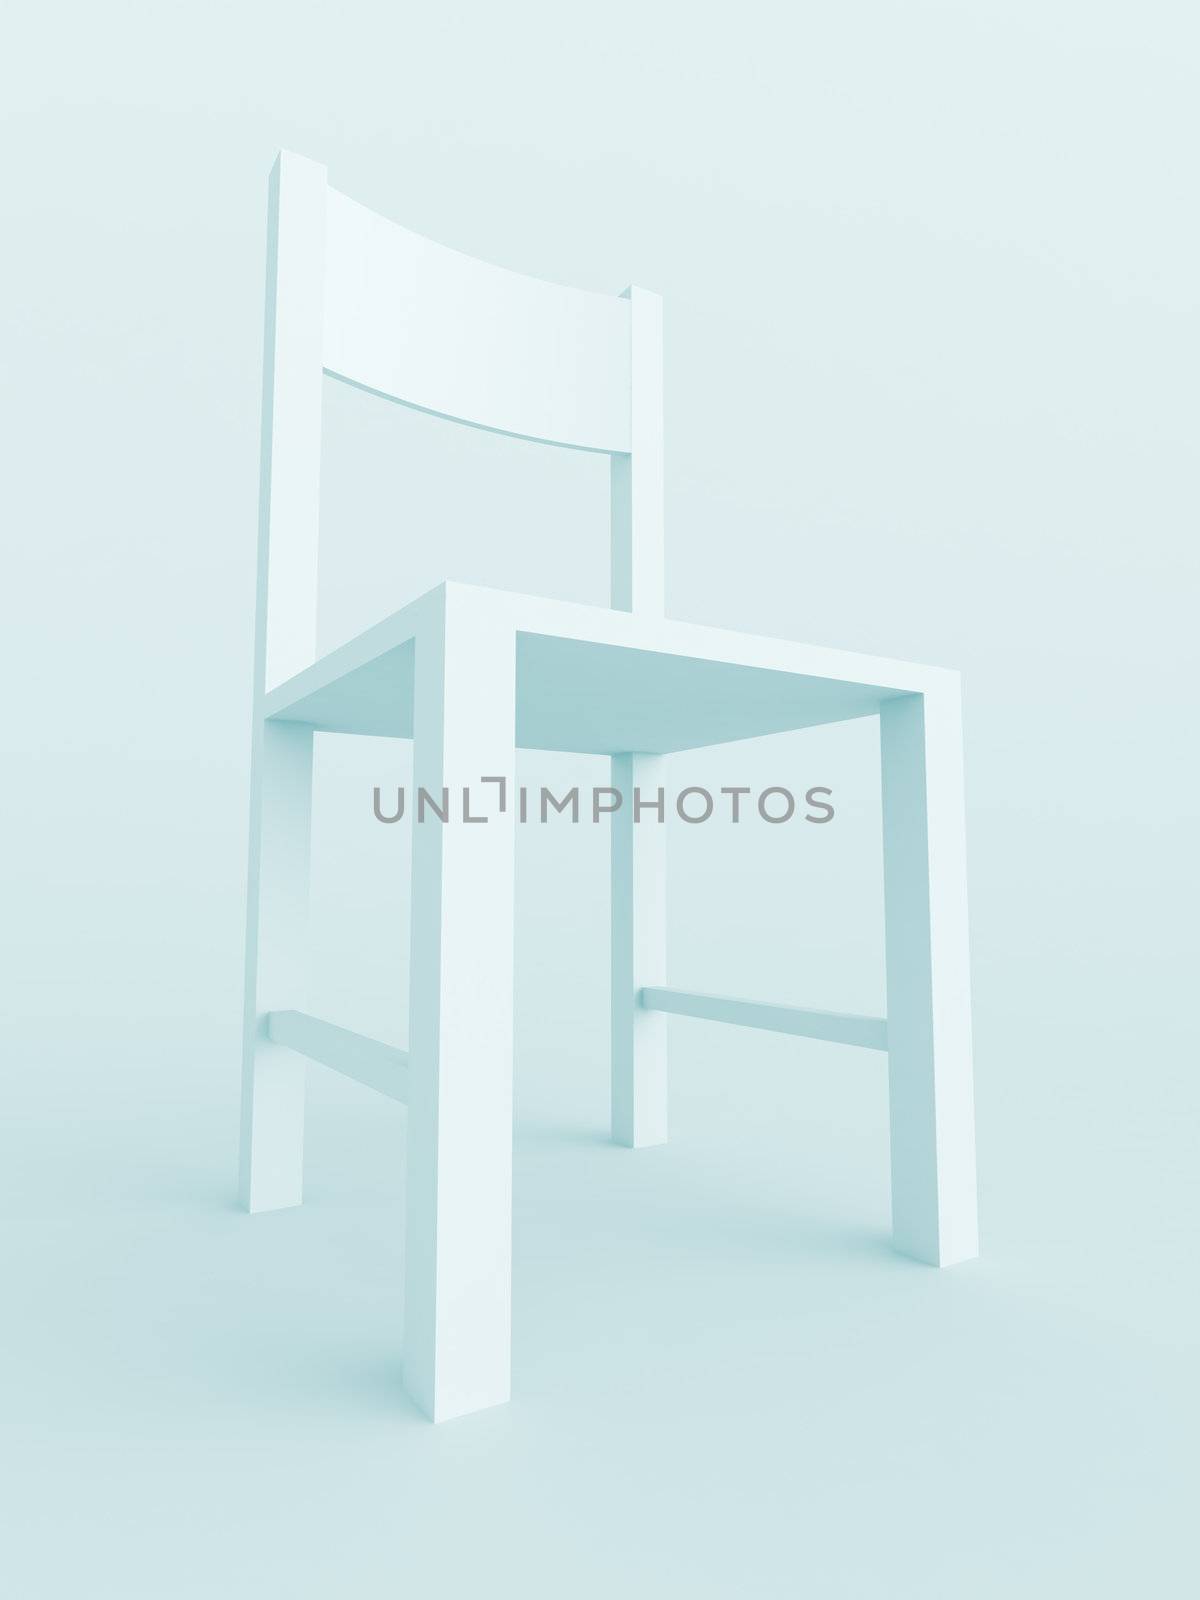 Chair by maxkrasnov